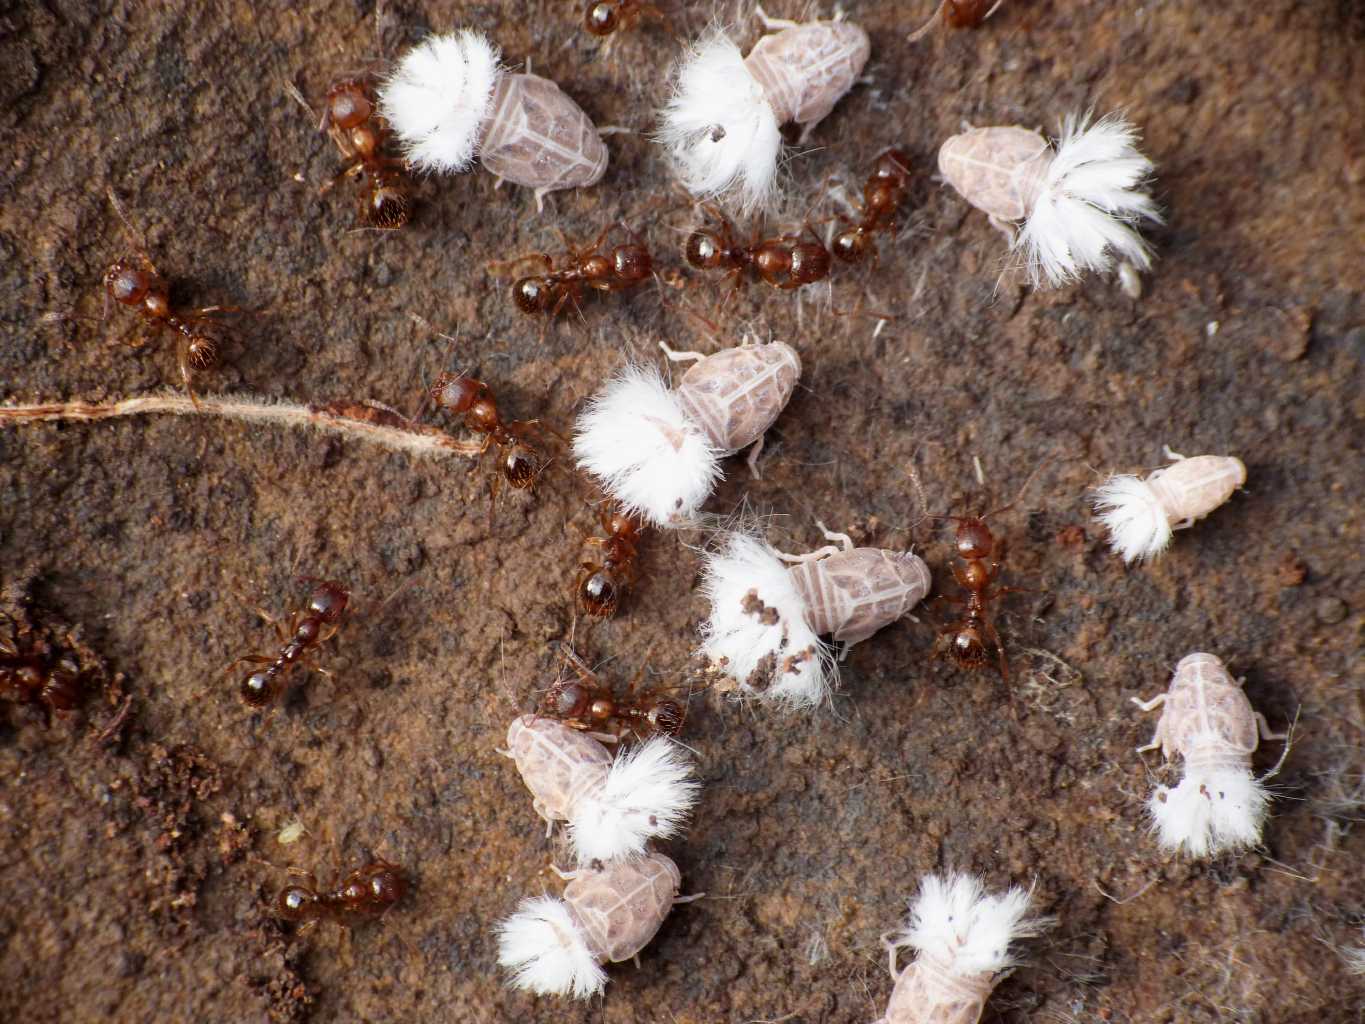 Reptalus sp. ospiti delle formiche Myrmica sp. da Tolfa (RM)